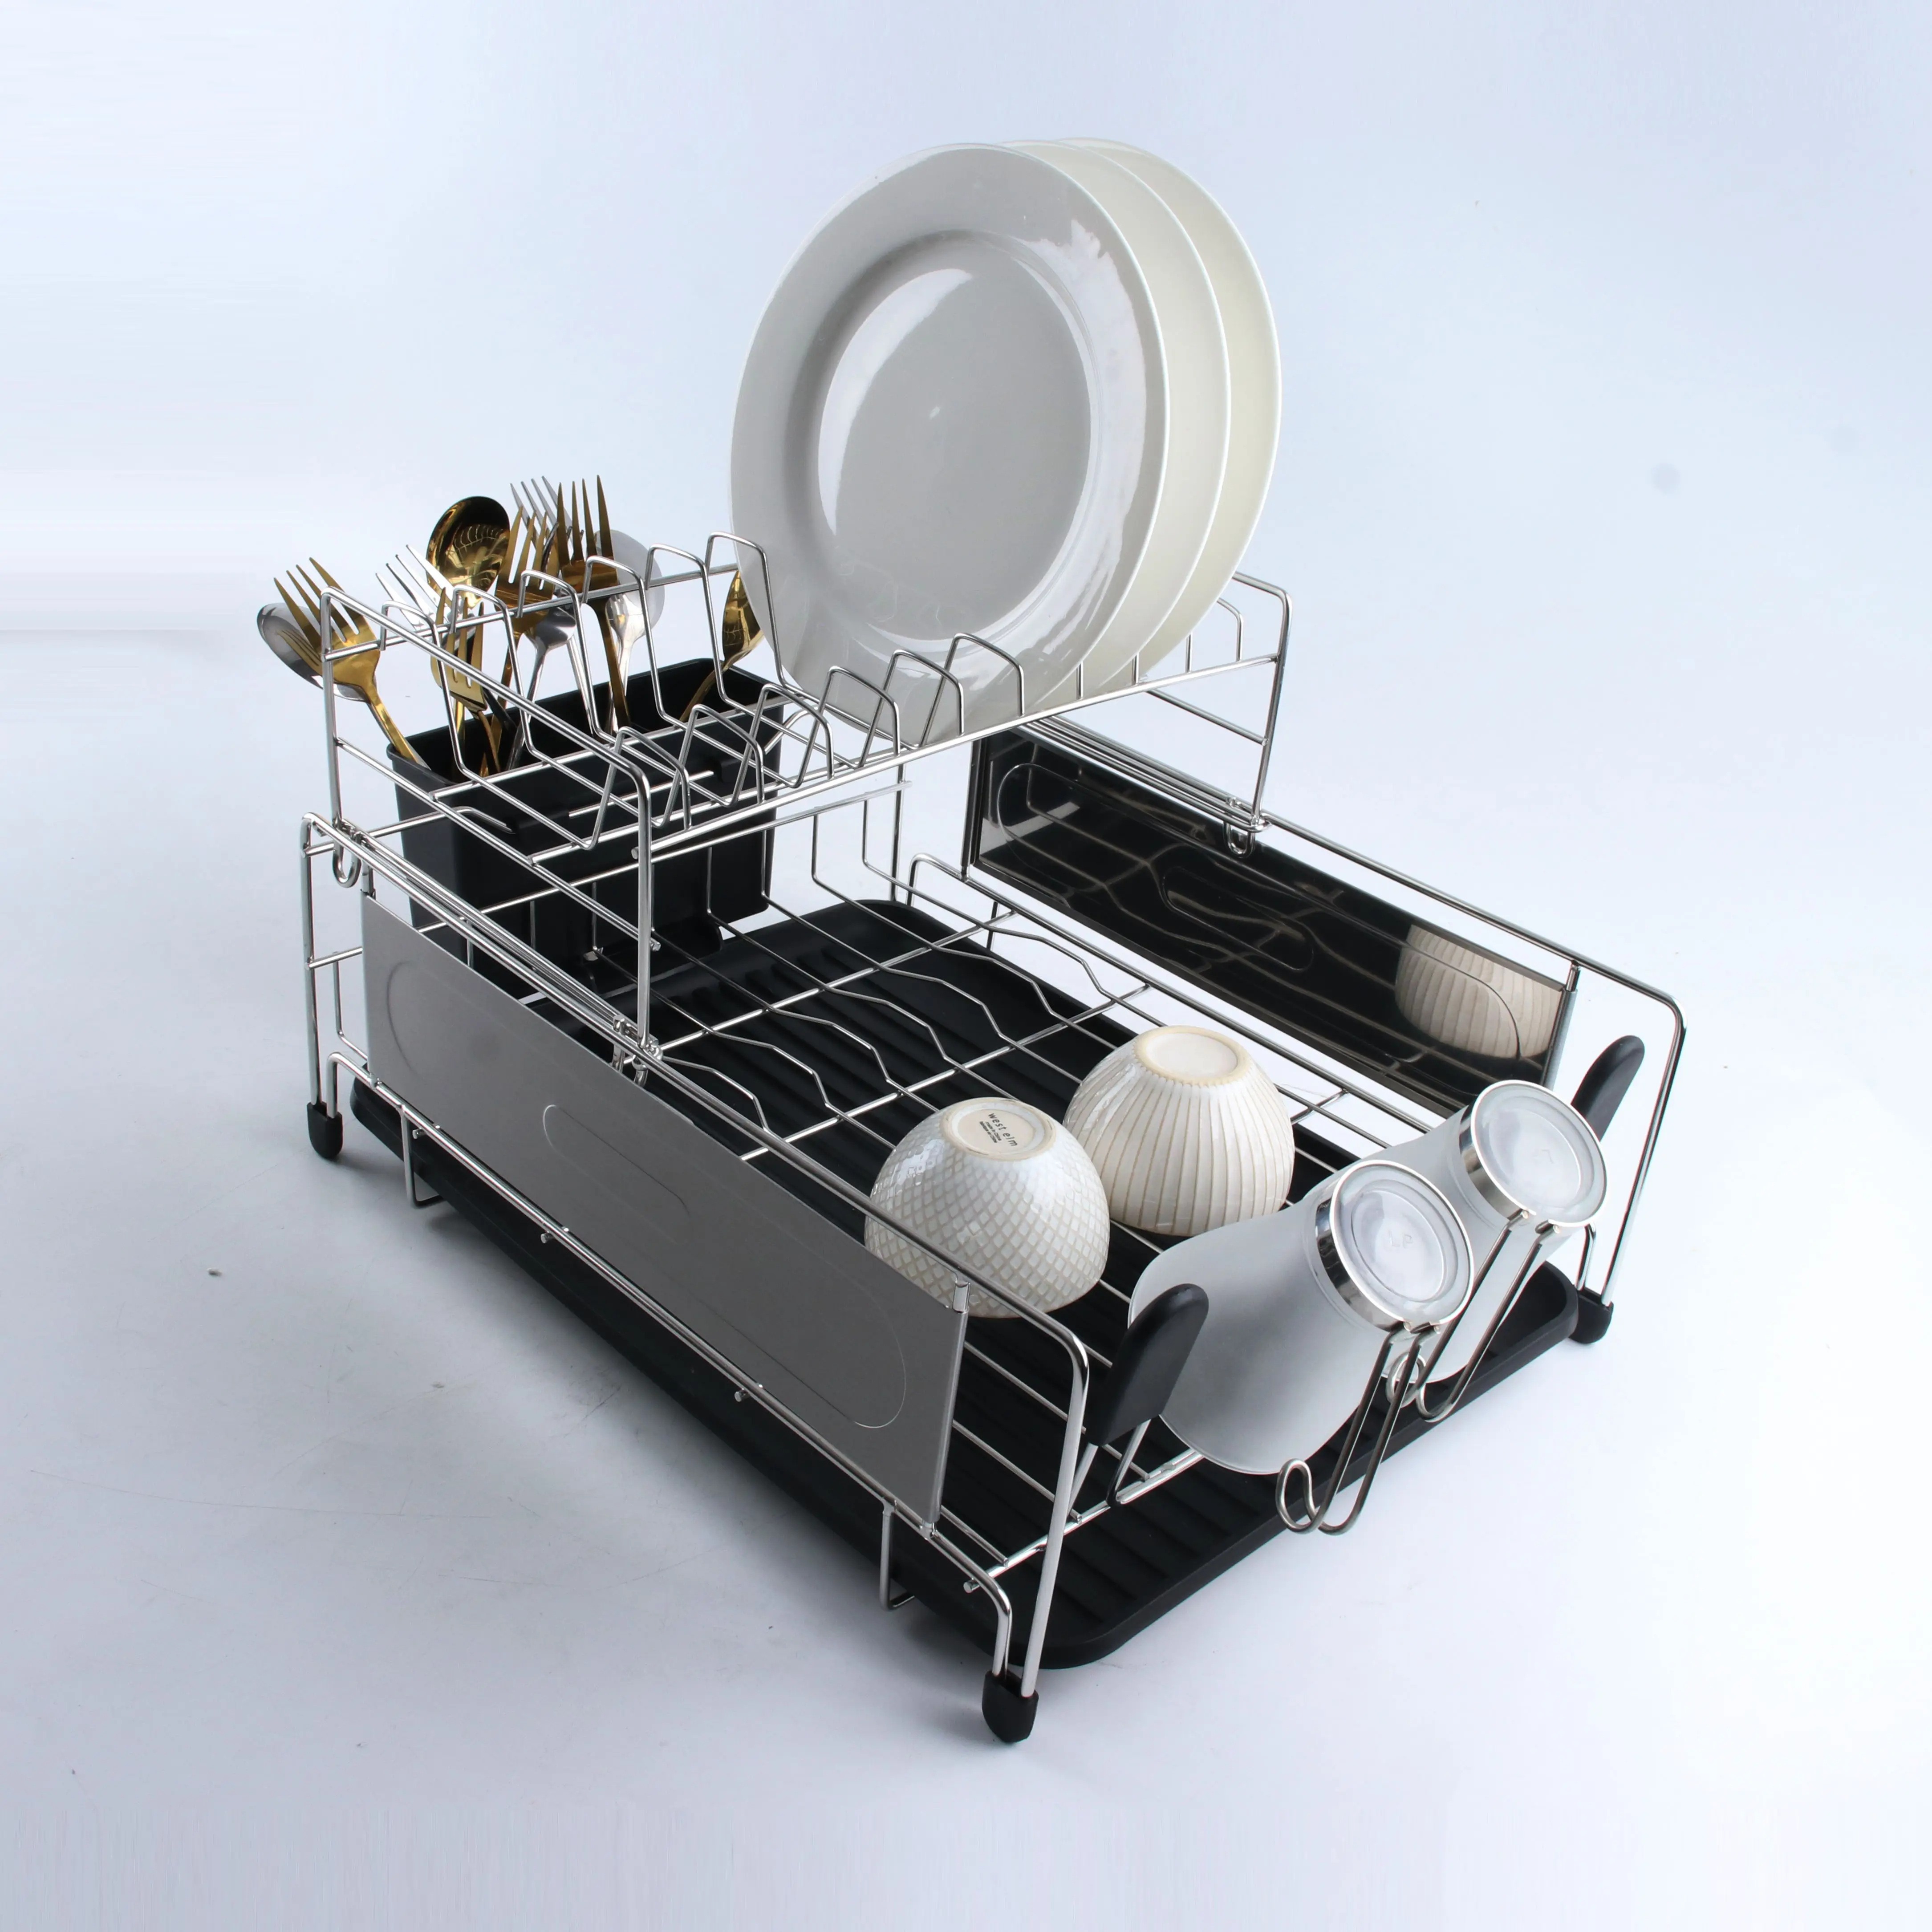 オールインワン多機能304ステンレス鋼2層皿水切りラックキッチン皿収納ラック